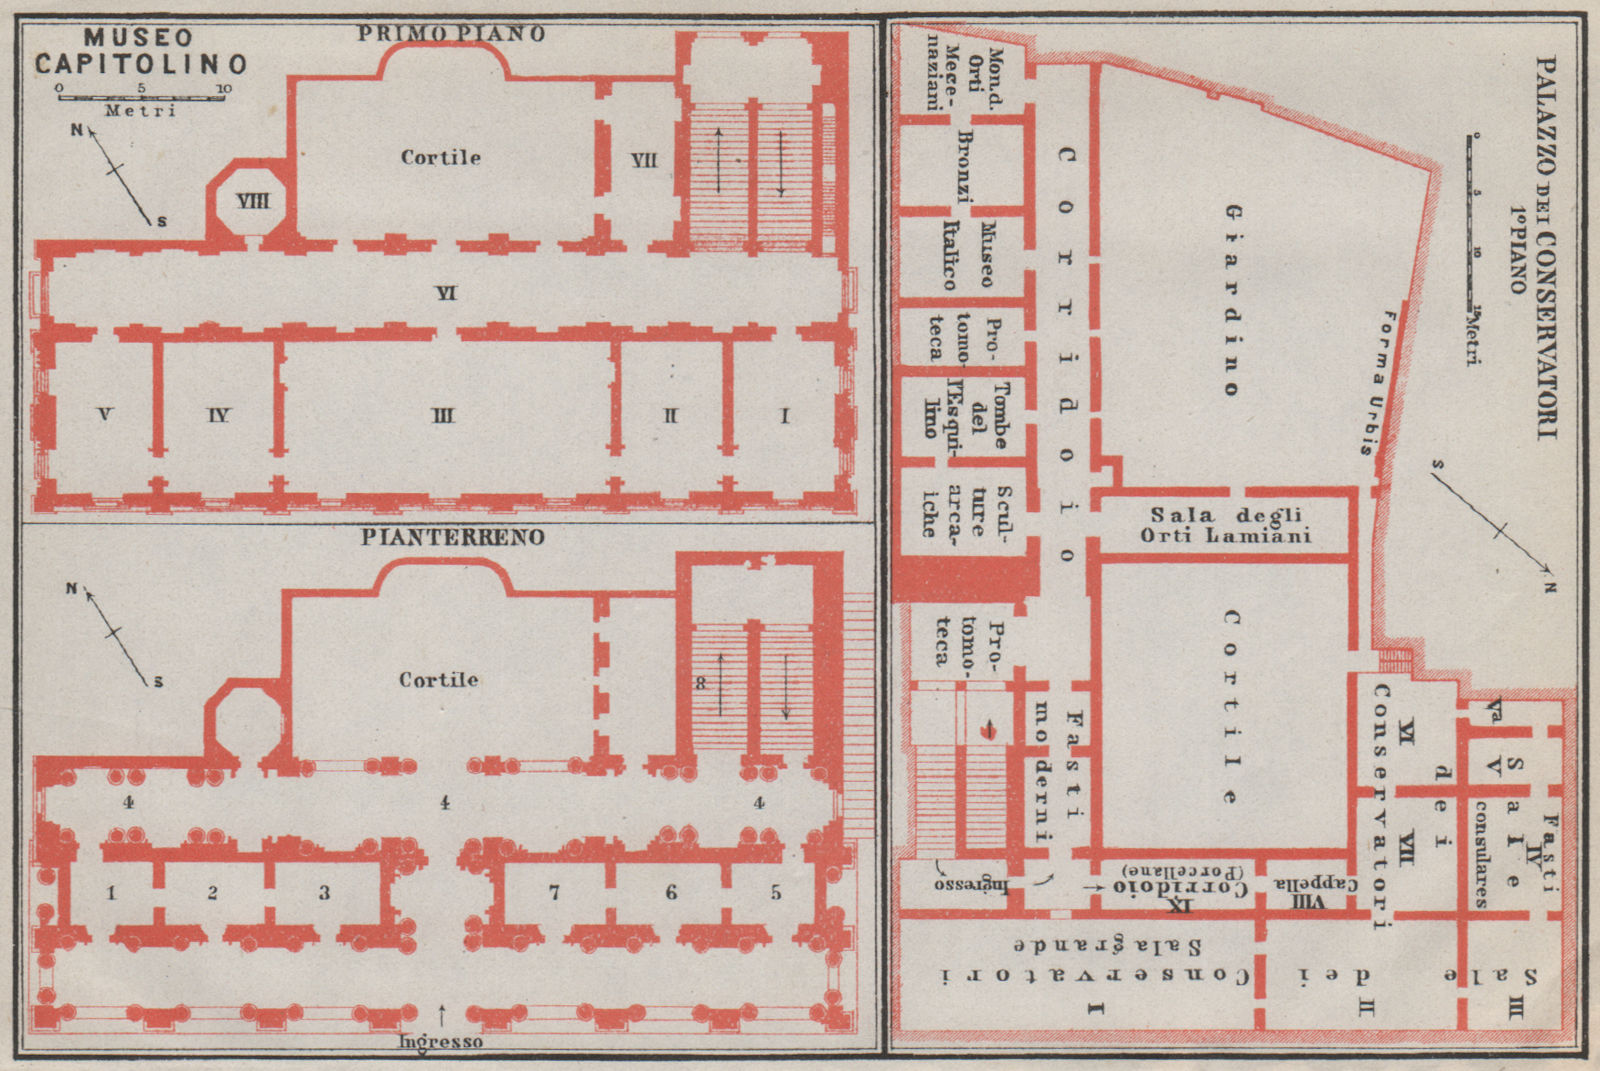 CAPITOLINE MUSEUM PALAZZO DEI CONSERVATORI MUSEO CAPITOLINO plan Rome 1909 map